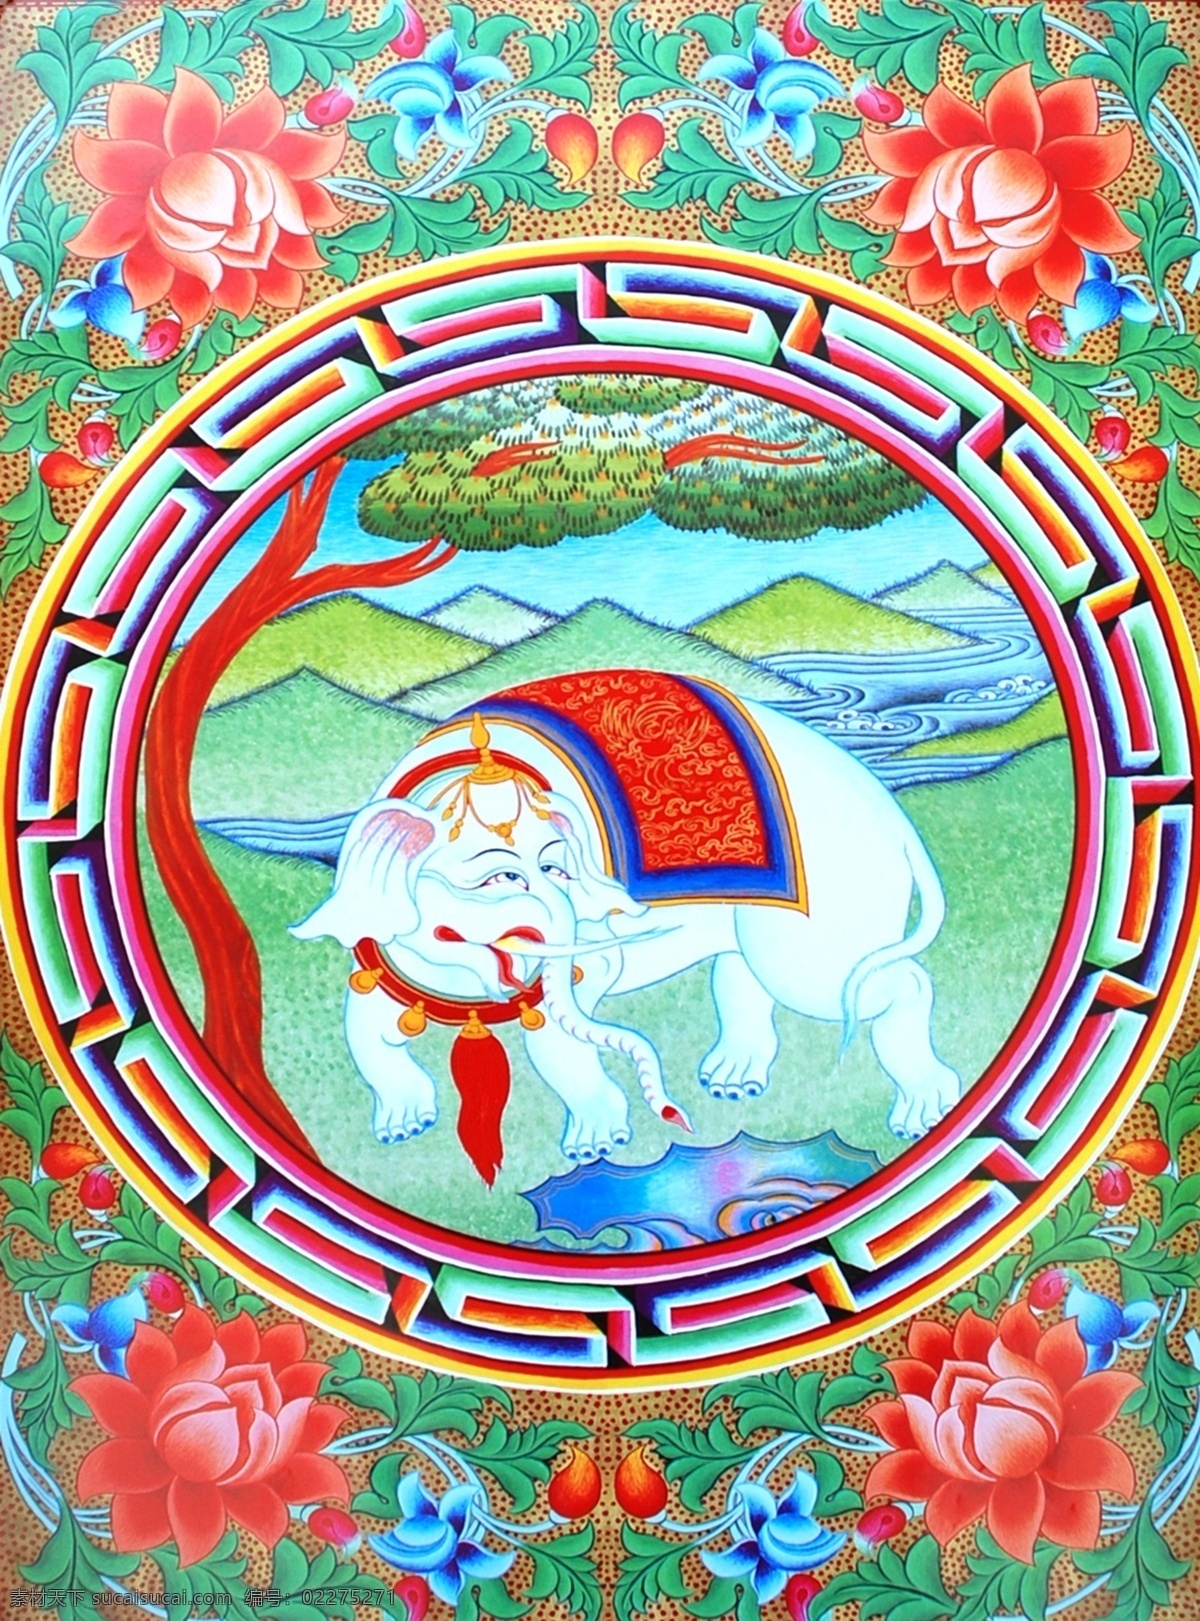 无框画 佛教 手绘 墙画 壁画 卧室画 绘画 吉祥 图案 藏族 宗教 和平 平安 宗教设计 藏族传统图案 绘画书法 文化艺术